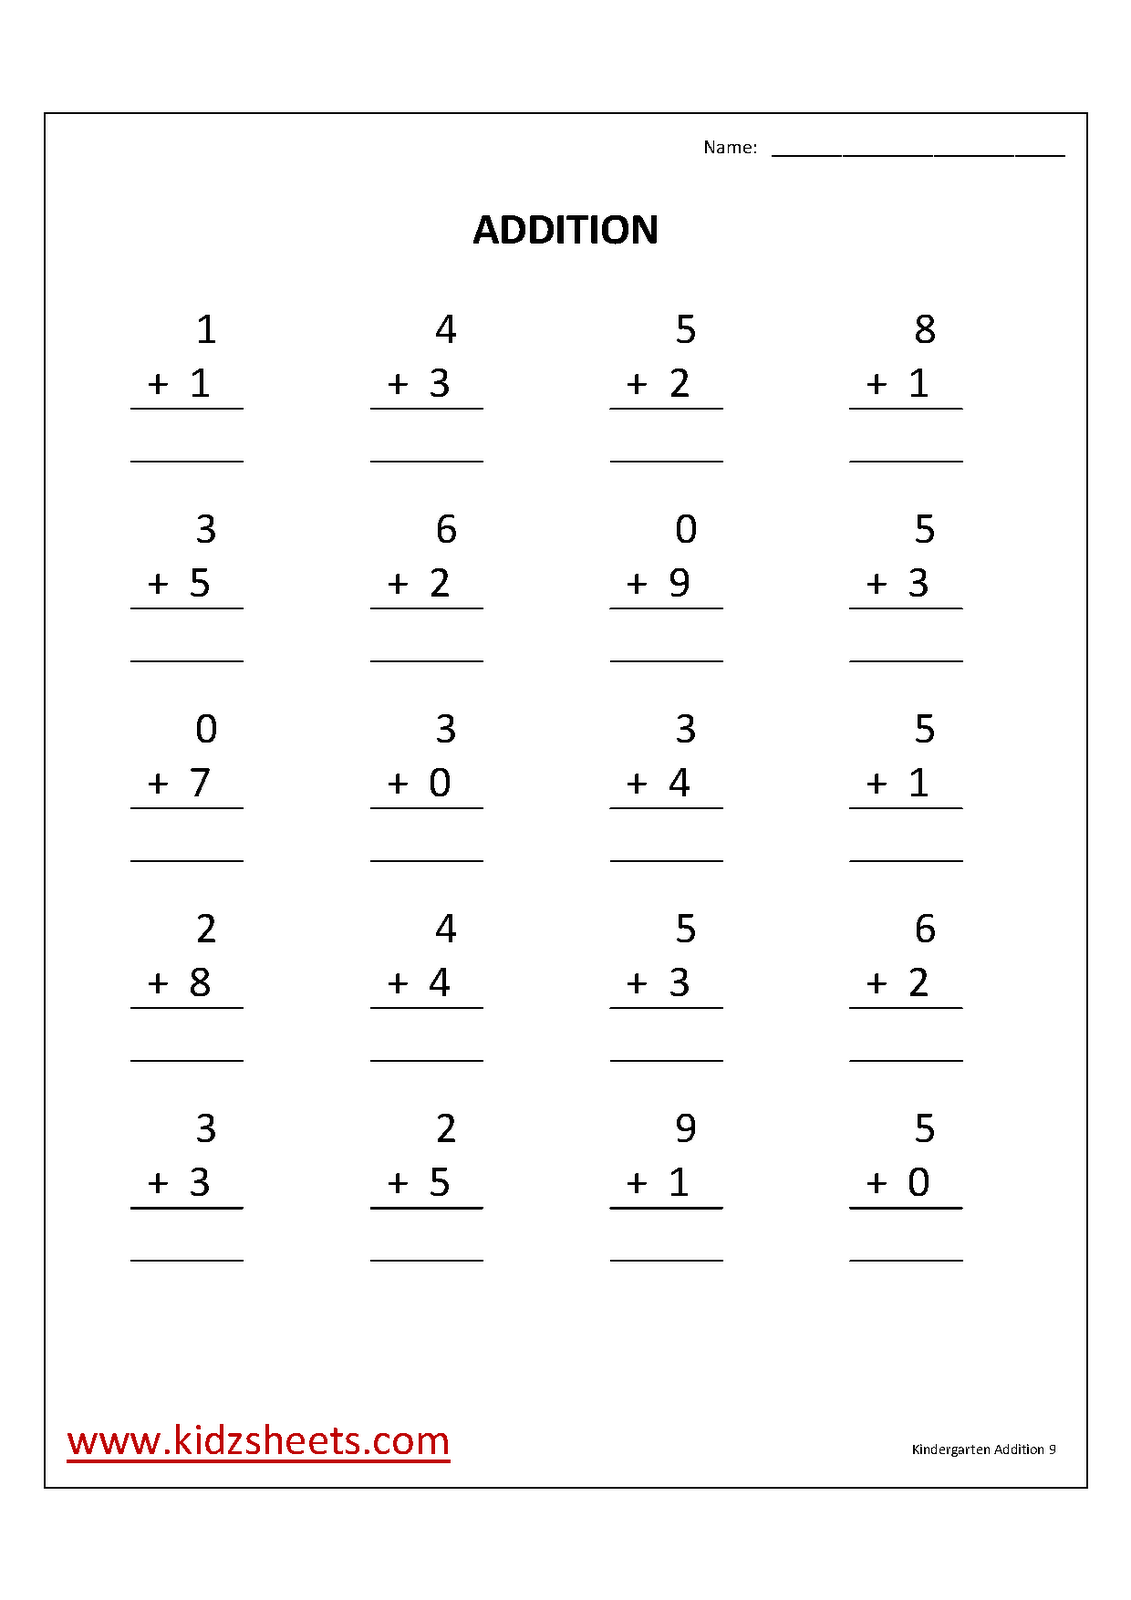 Free Printable Kindergarten Addition Worksheets Image